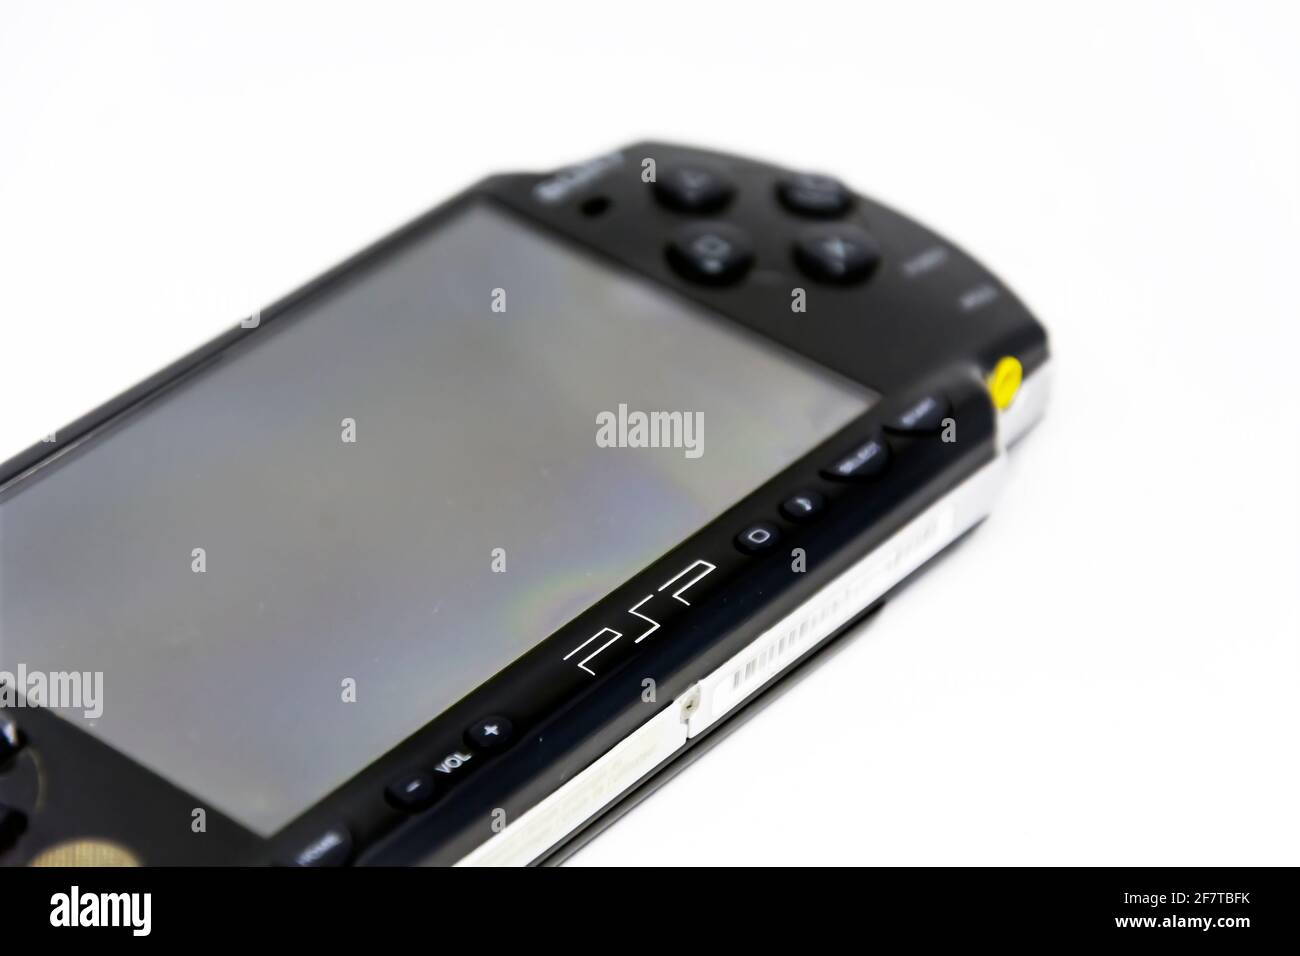 Rom, Italien, 9. April 2021: Seitenansicht einer Sony PlayStation Portable ( PSP). PSP ist eine von Sony entwickelte und vermarktete  Handheld-Spielekonsole Stockfotografie - Alamy